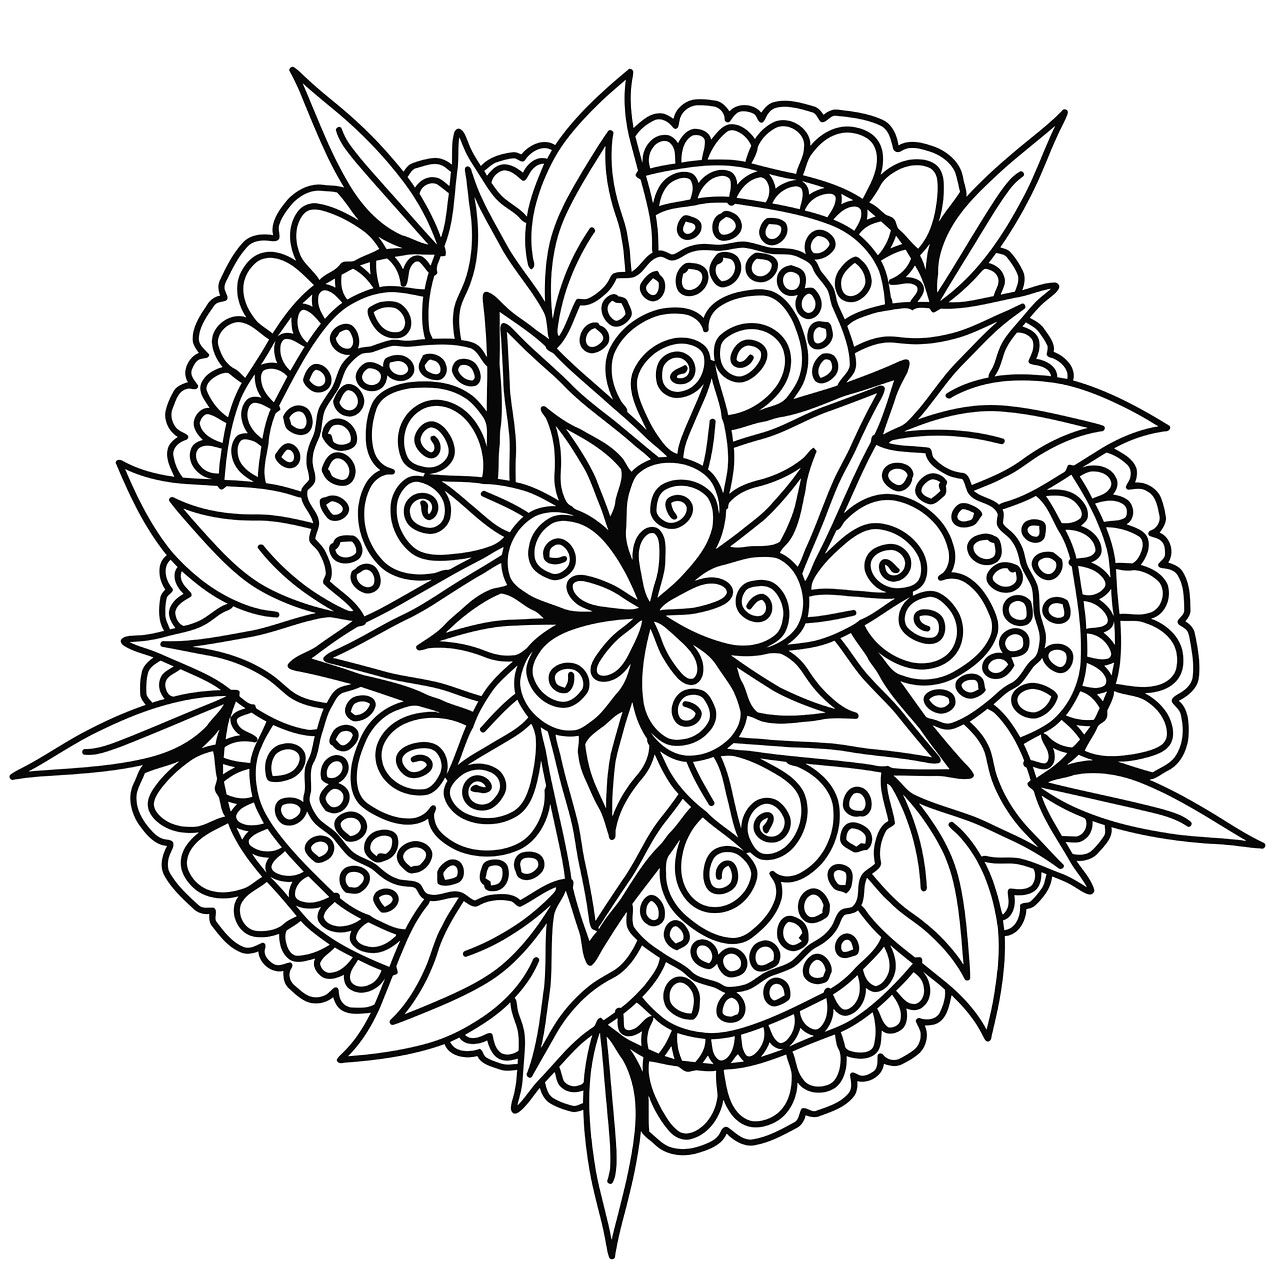 Uma bonita e original Mandala desenhada à mão, inspirada na beleza da natureza. Colora-a com a sua própria personalidade, sem pensar noutra coisa senão em colorir.